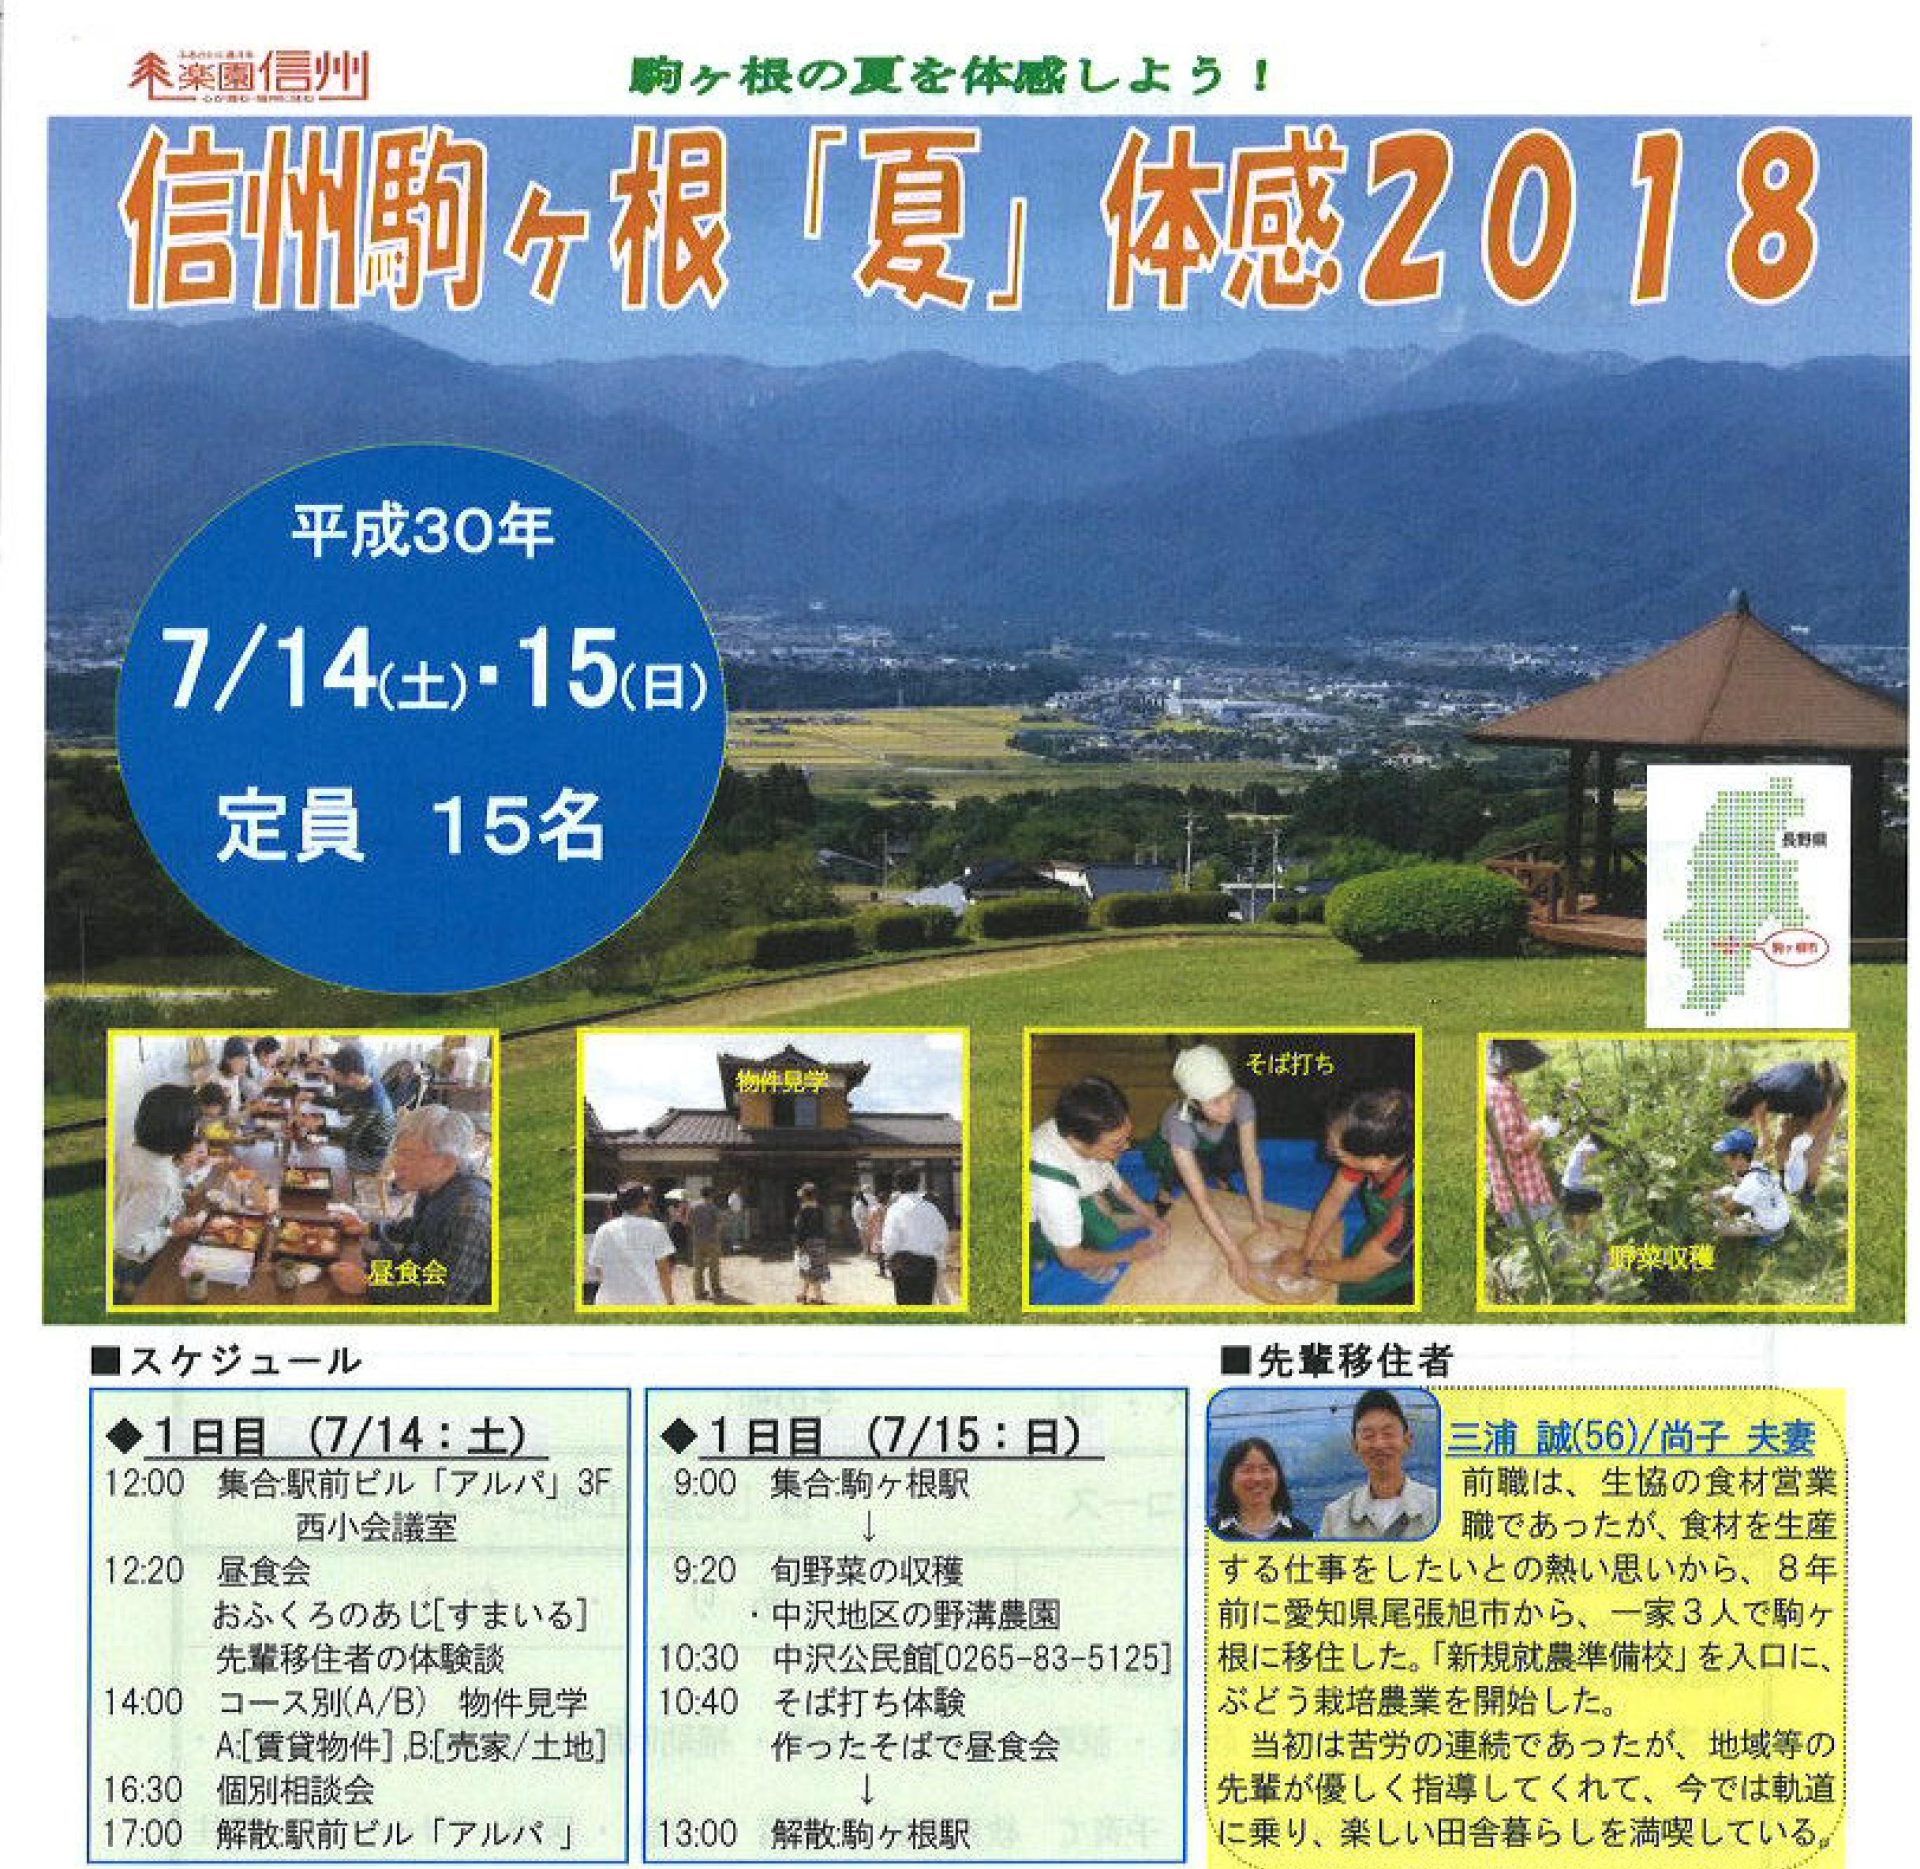 信州駒ヶ根｢夏｣体感2018ツアー | 移住関連イベント情報